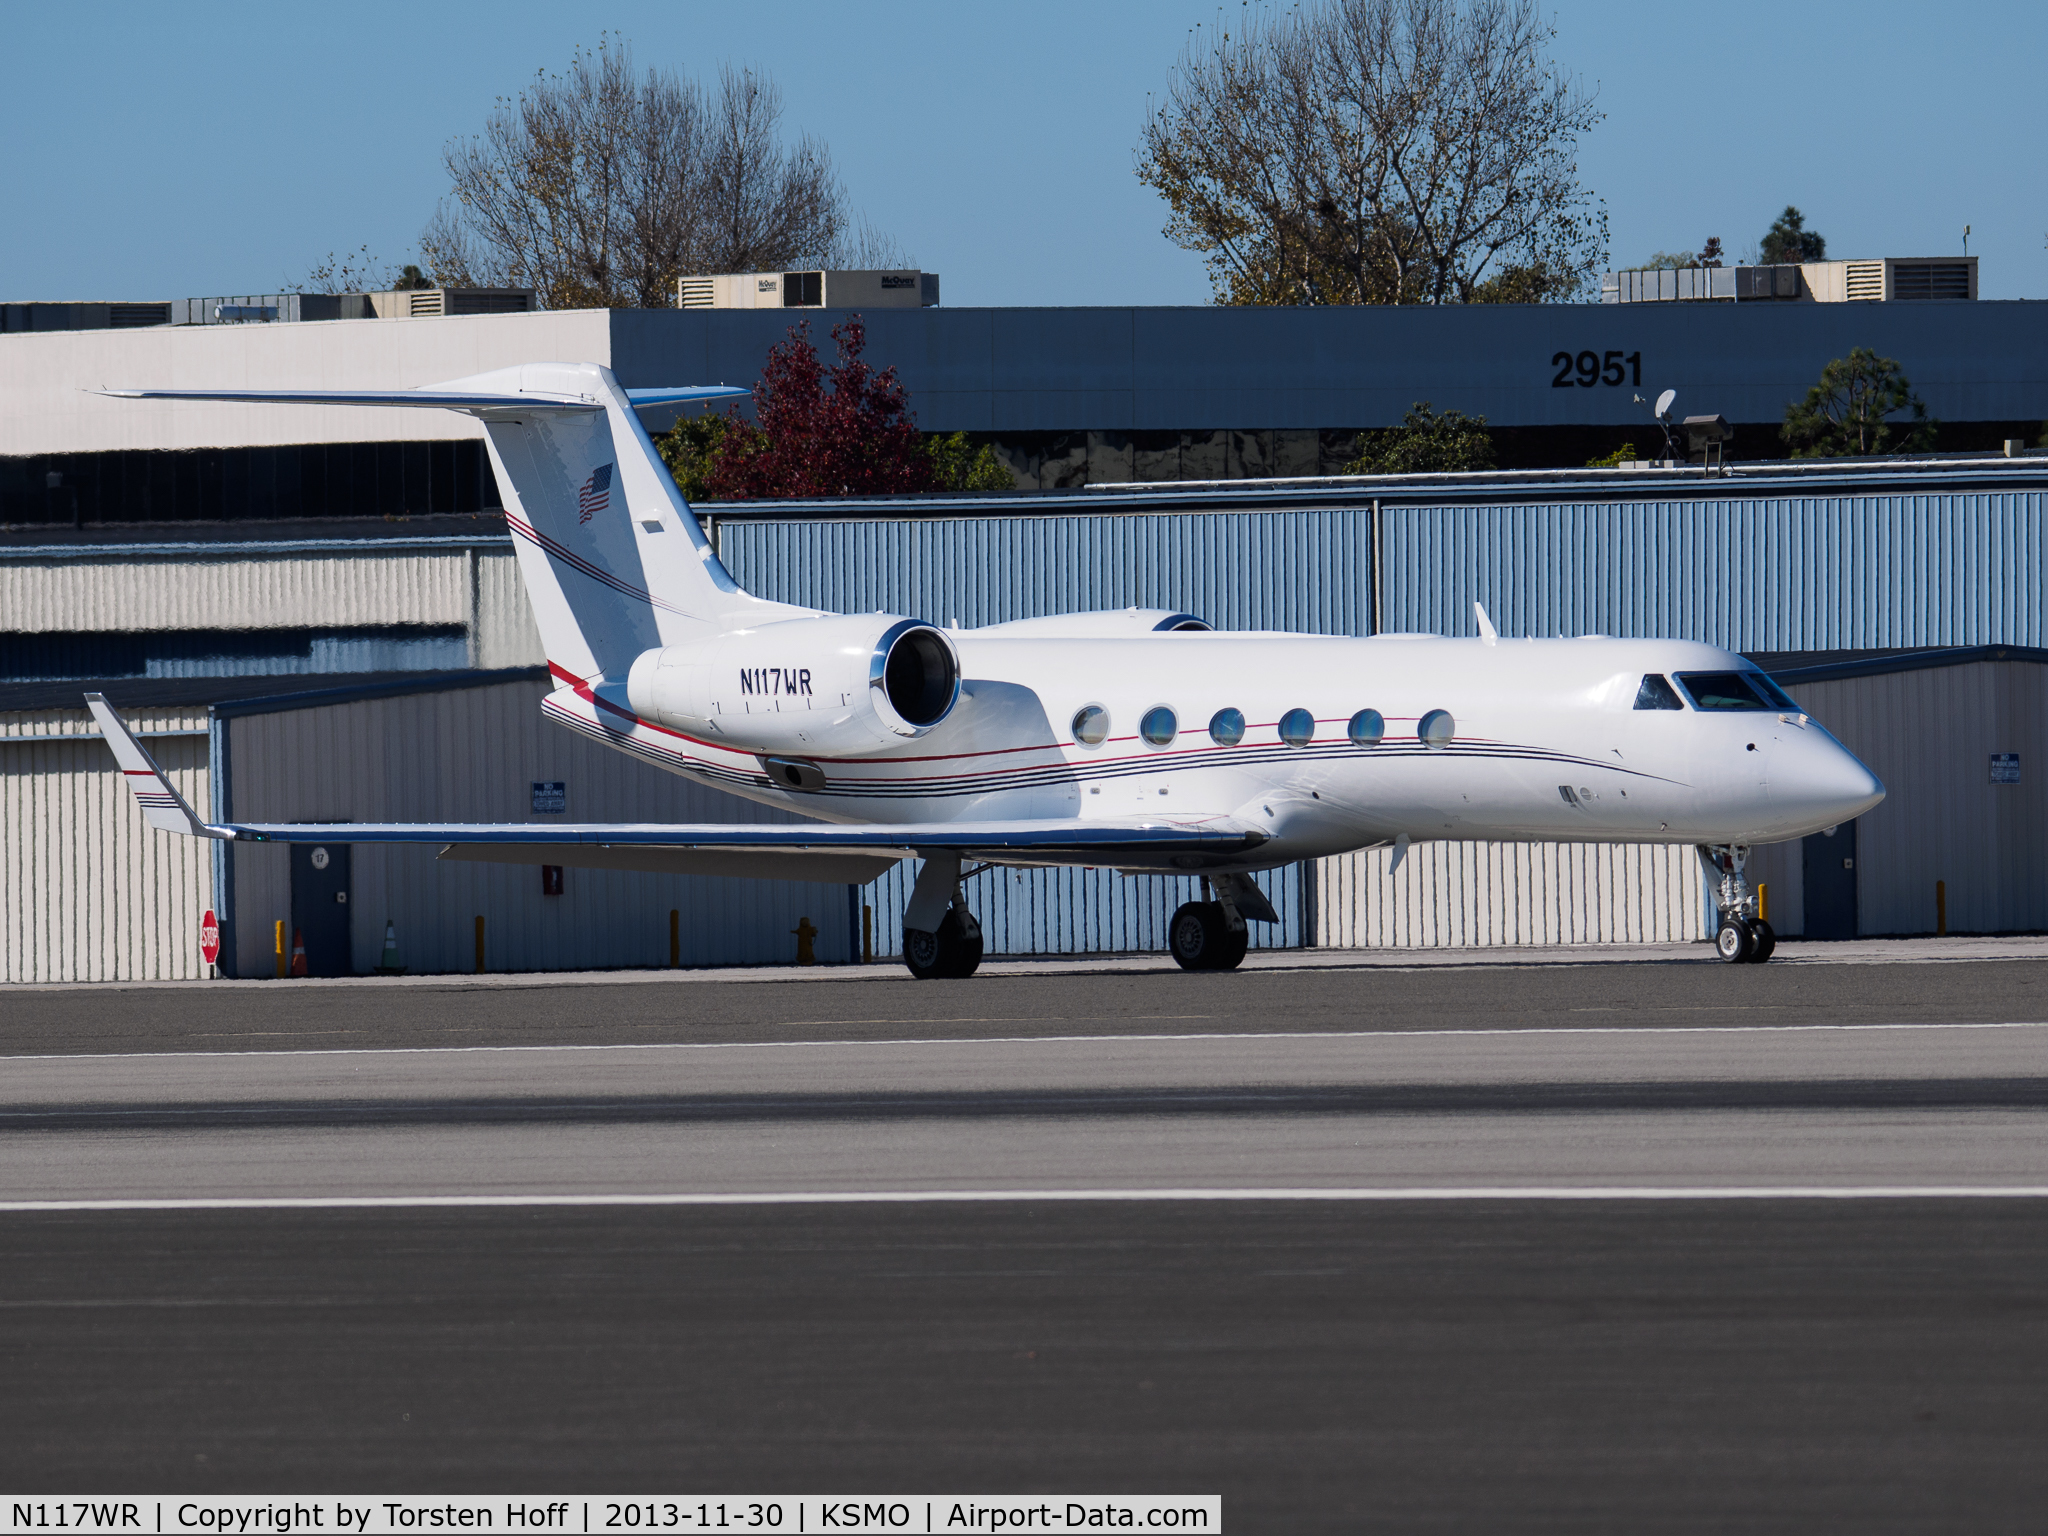 N117WR, 2005 Gulfstream Aerospace GIV-X (G350) C/N 4015, N117WR taxiing